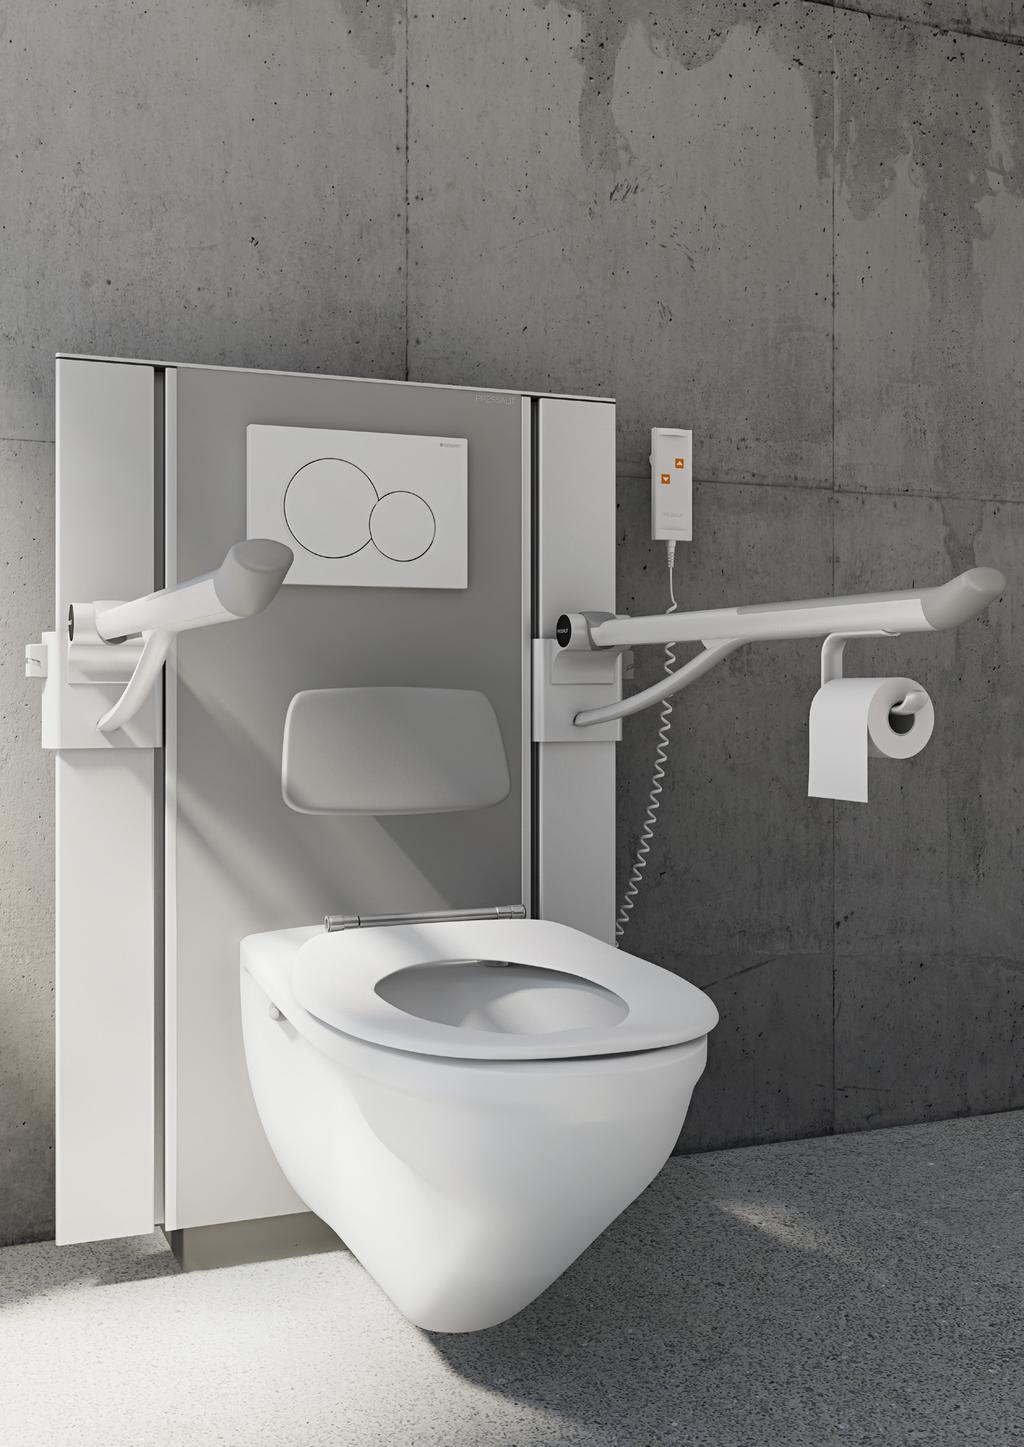 Toalettheisen leveres med håndbetjening. Ekstra tilbehør, som elektriske skylleknapper og toalettpapirholdere, kan monteres på toalettstøtten.